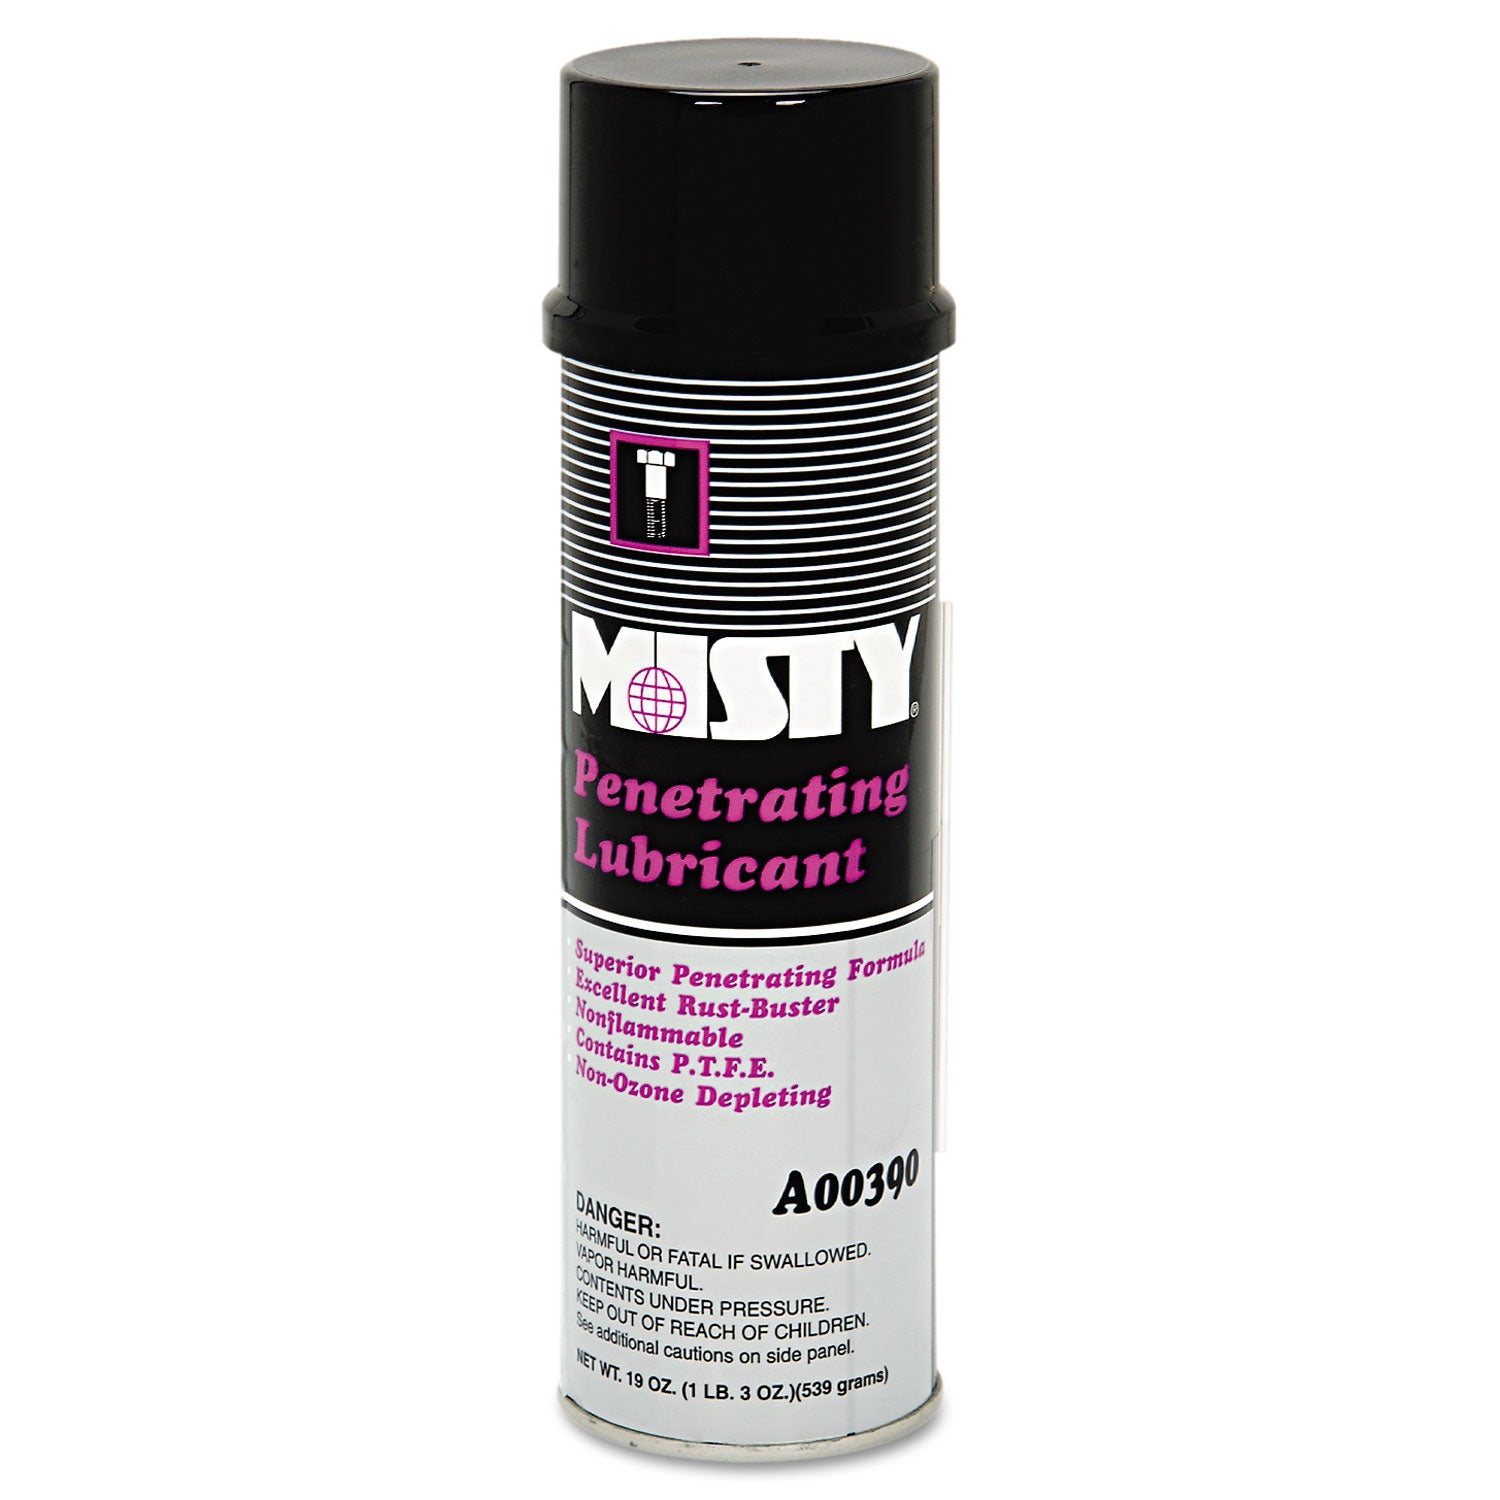 penetrating-lubricant-spray-19-oz-aerosol-can-12-carton_amr1002456 - 1